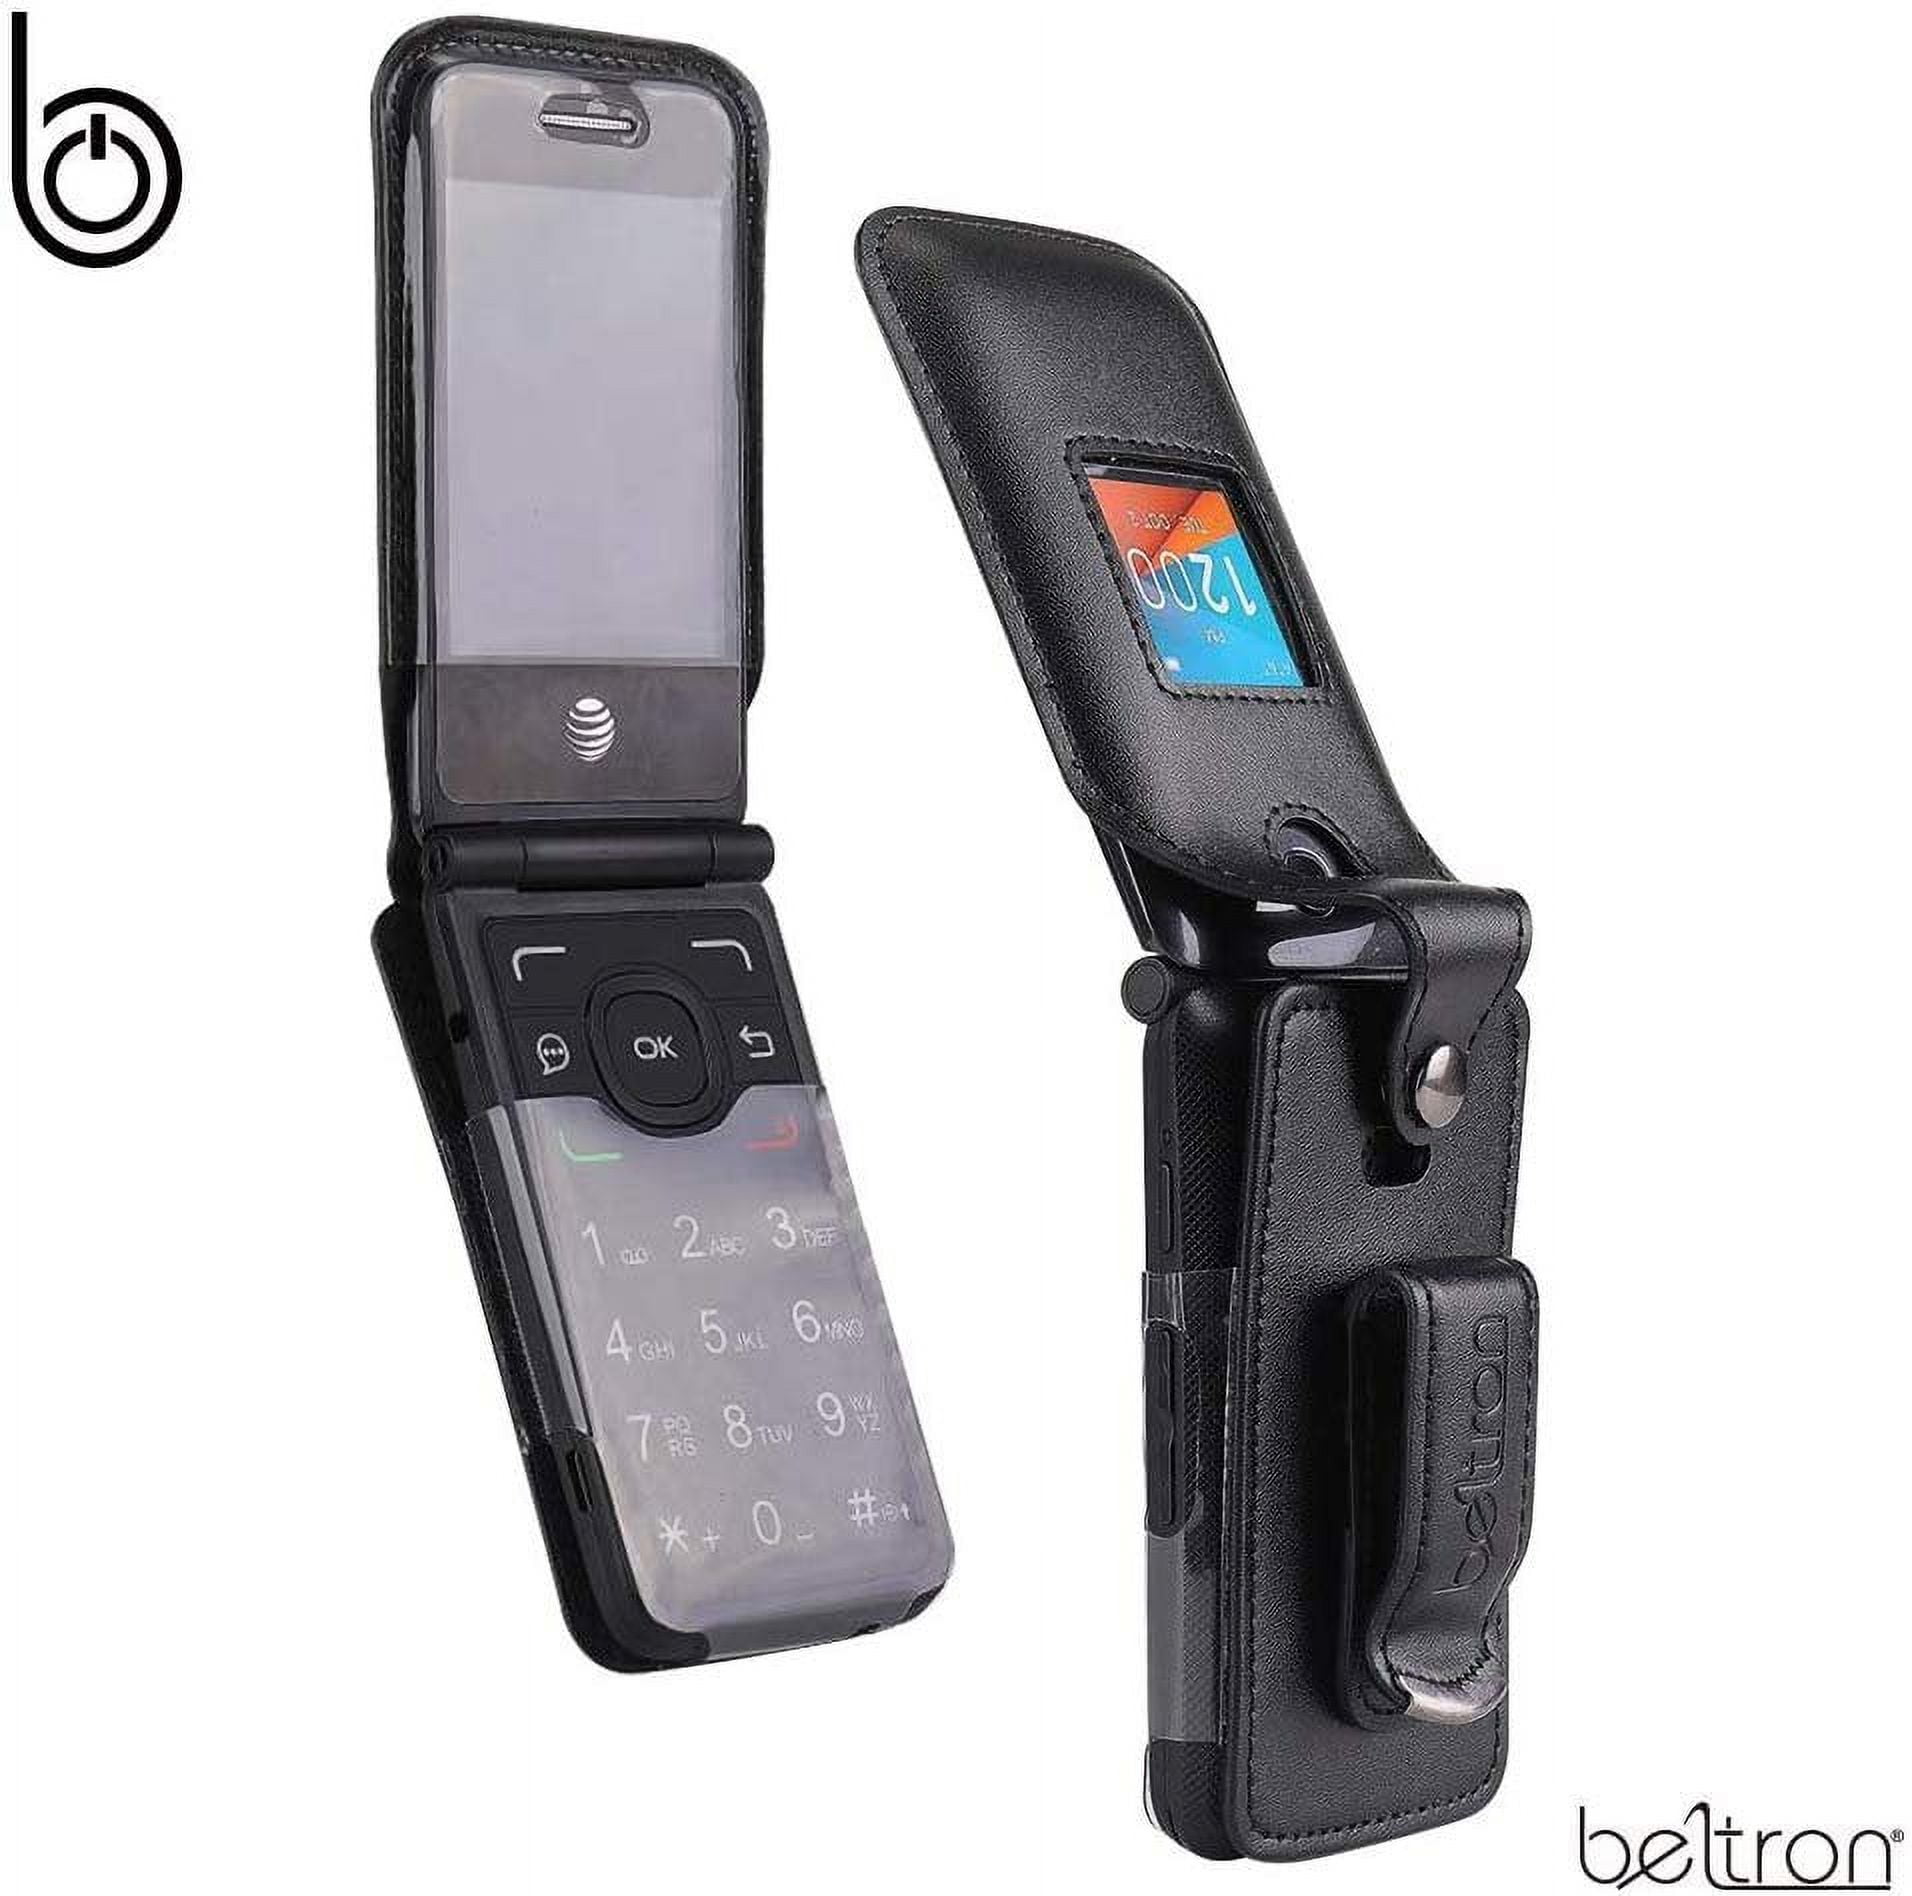 Alcatel Go Flip 4 4056W 4GB (T-Mobile only) Flip Phone - for Senior Easy  Use Blue